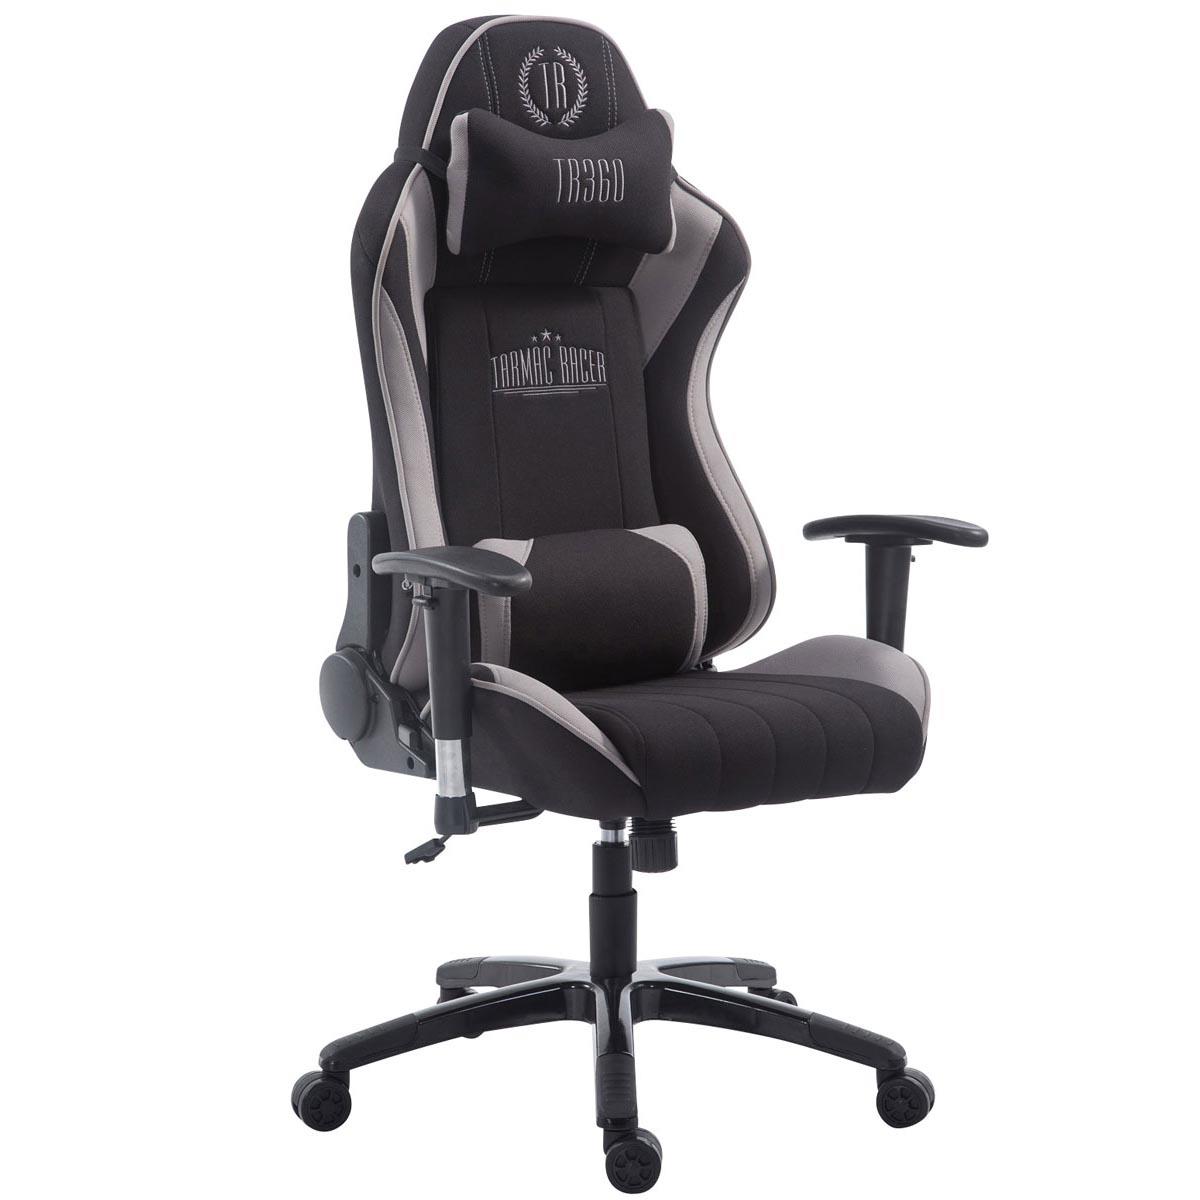 Gaming-Stuhl TURBO STOFF, neigbare Rückenlehne, Nacken- und Lordosekissen, Farbe Schwarz / Grau